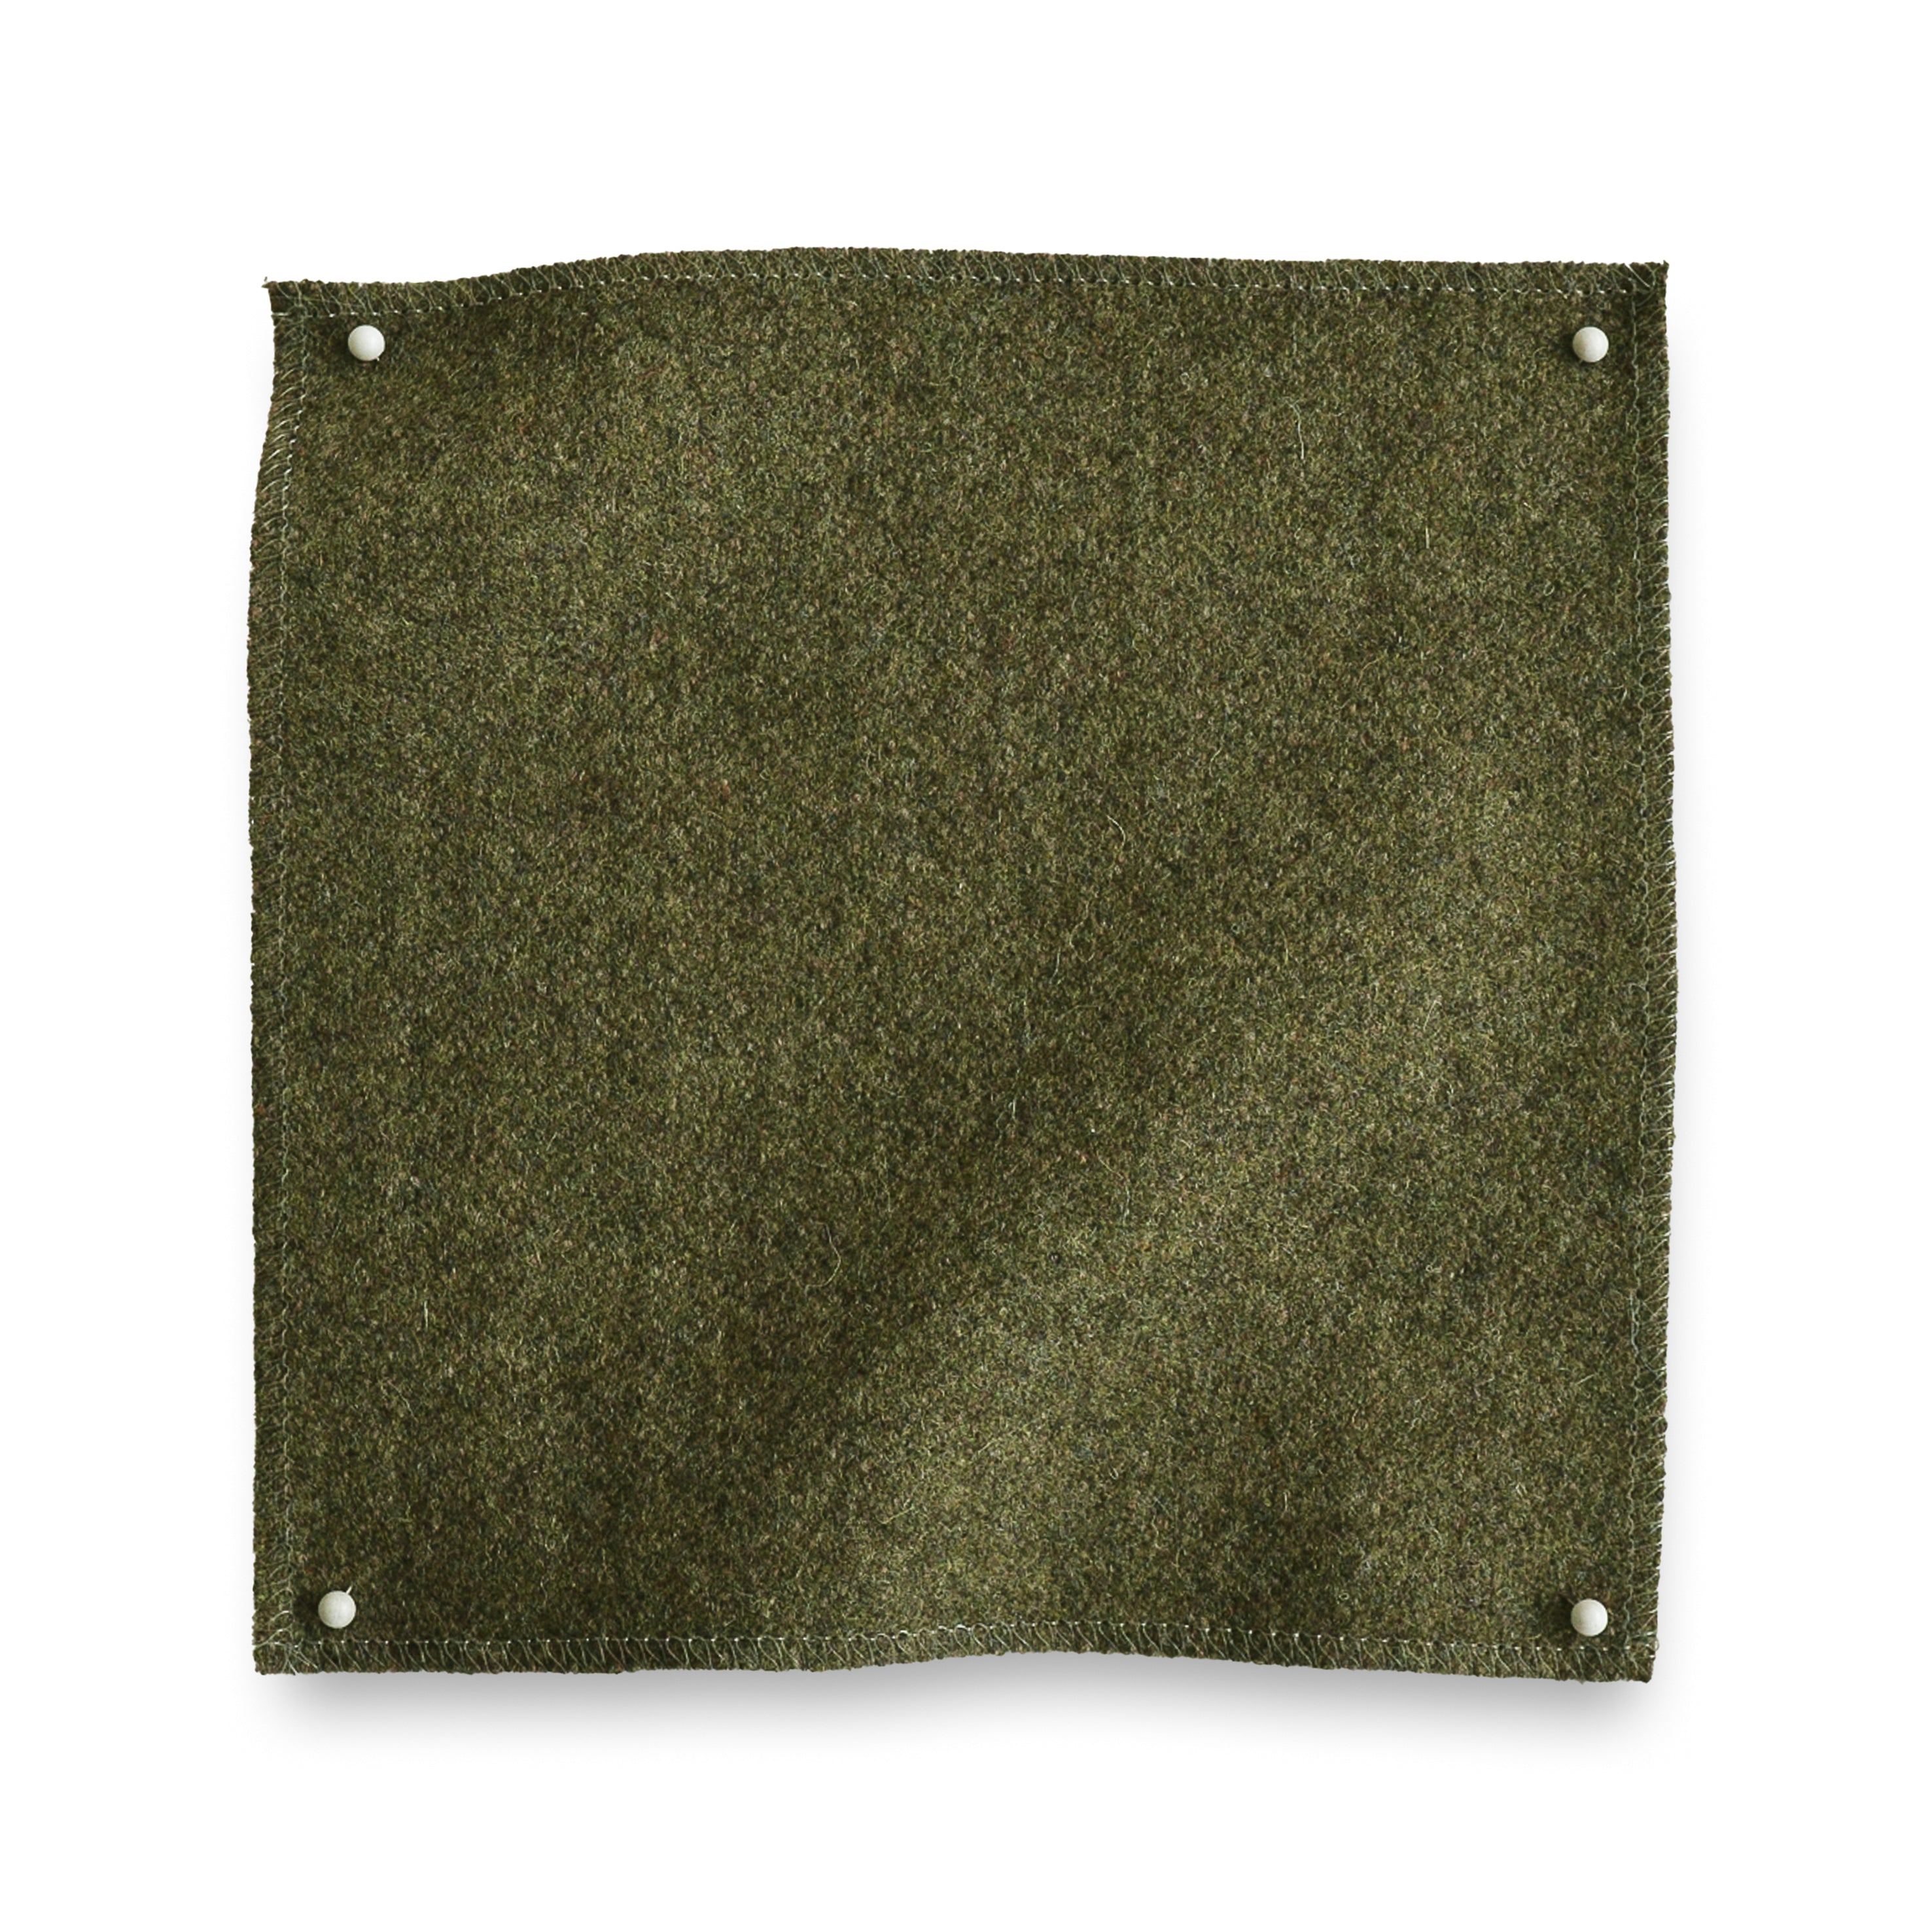 Wool melton swatch pinned in all corners in moss green